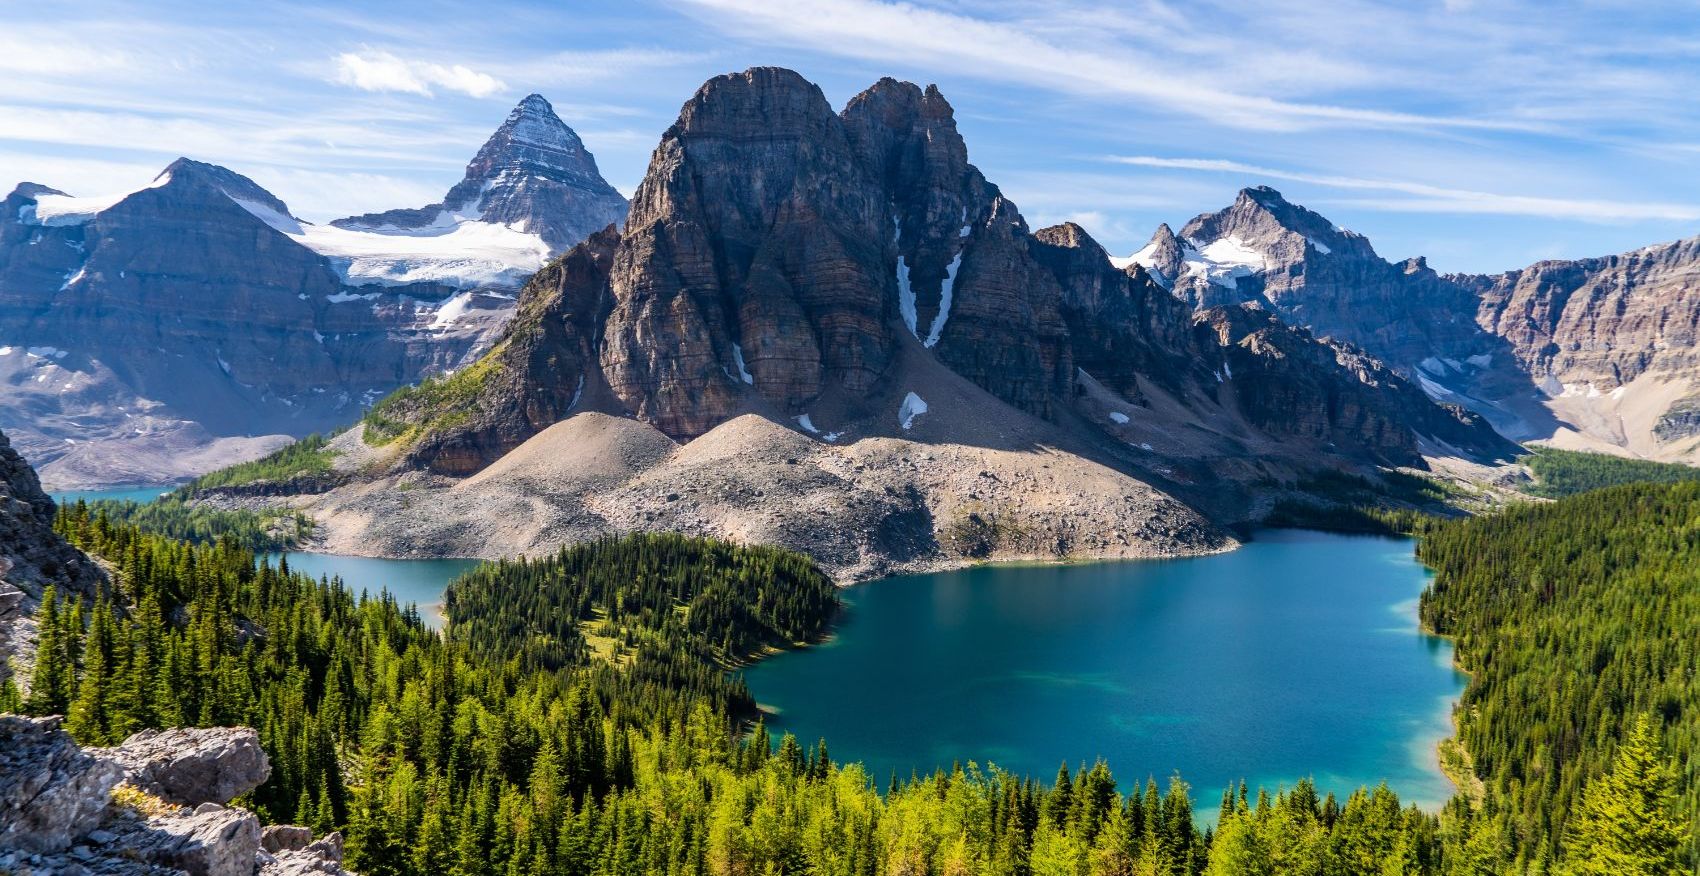 Mount Assiniboine in British Columbia, Canada